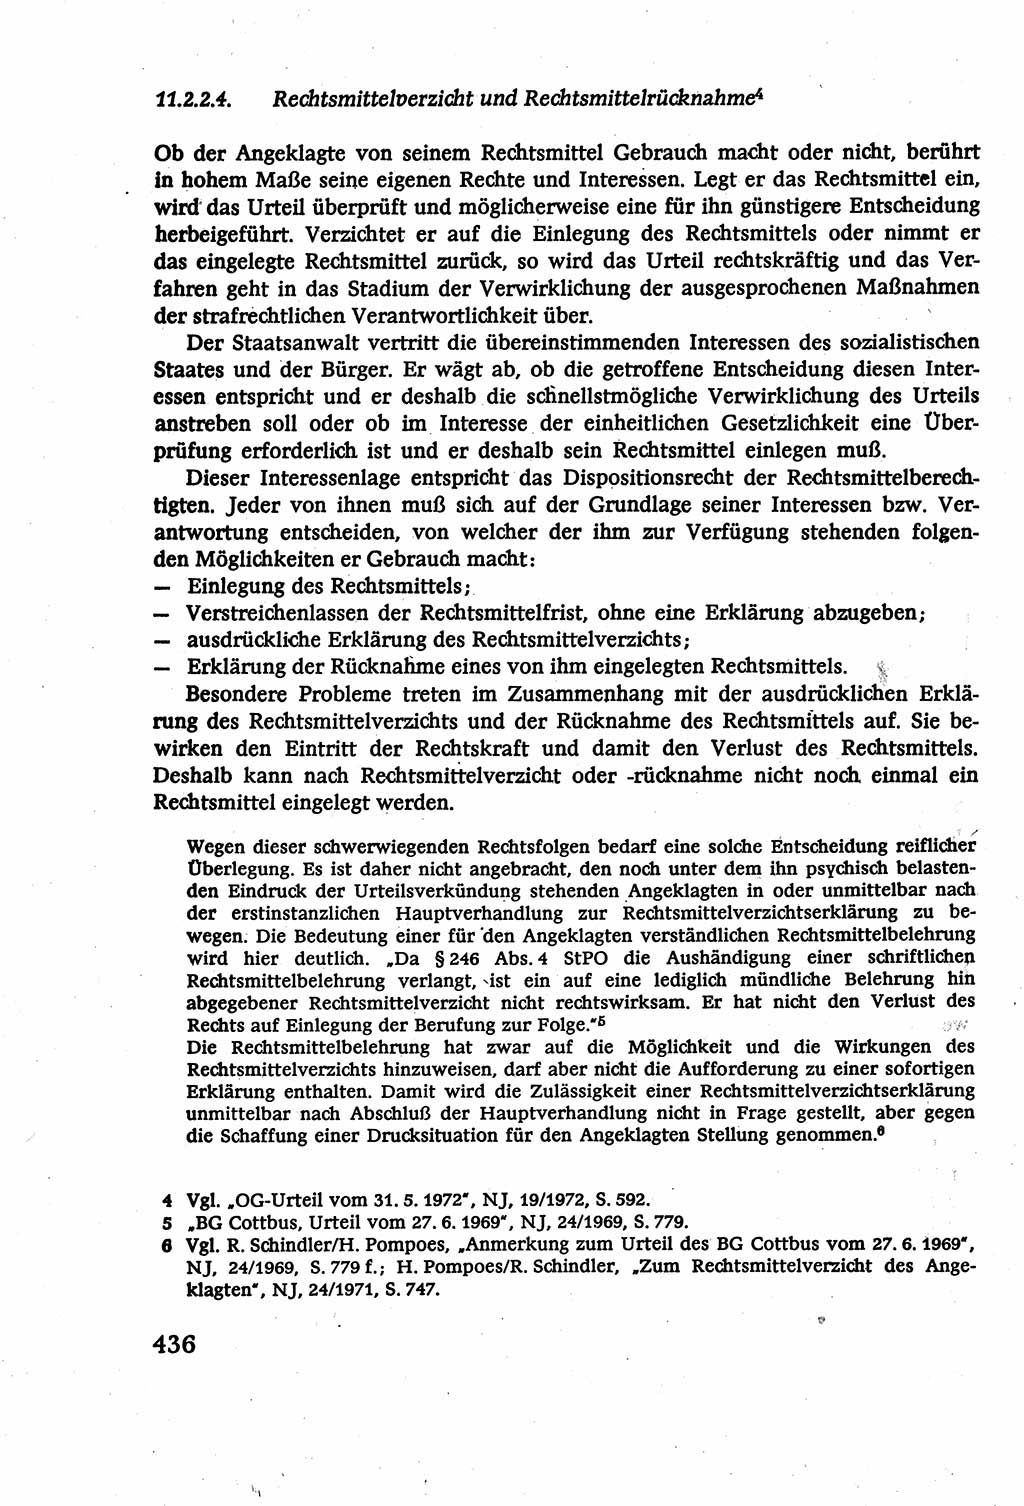 Strafverfahrensrecht [Deutsche Demokratische Republik (DDR)], Lehrbuch 1977, Seite 436 (Strafverf.-R. DDR Lb. 1977, S. 436)